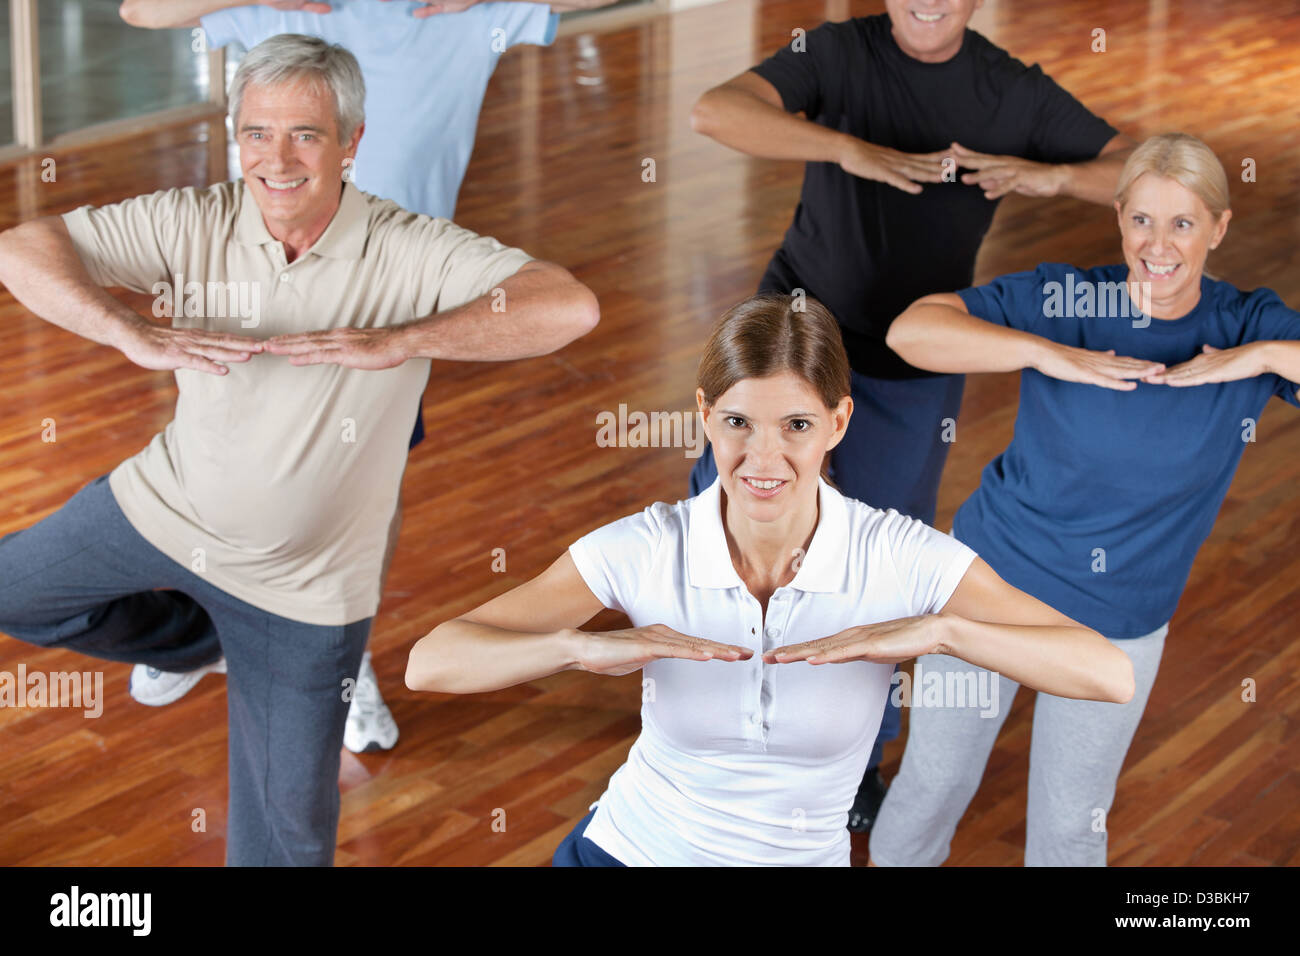 Senior citizens doing dance training in fitness center Stock Photo